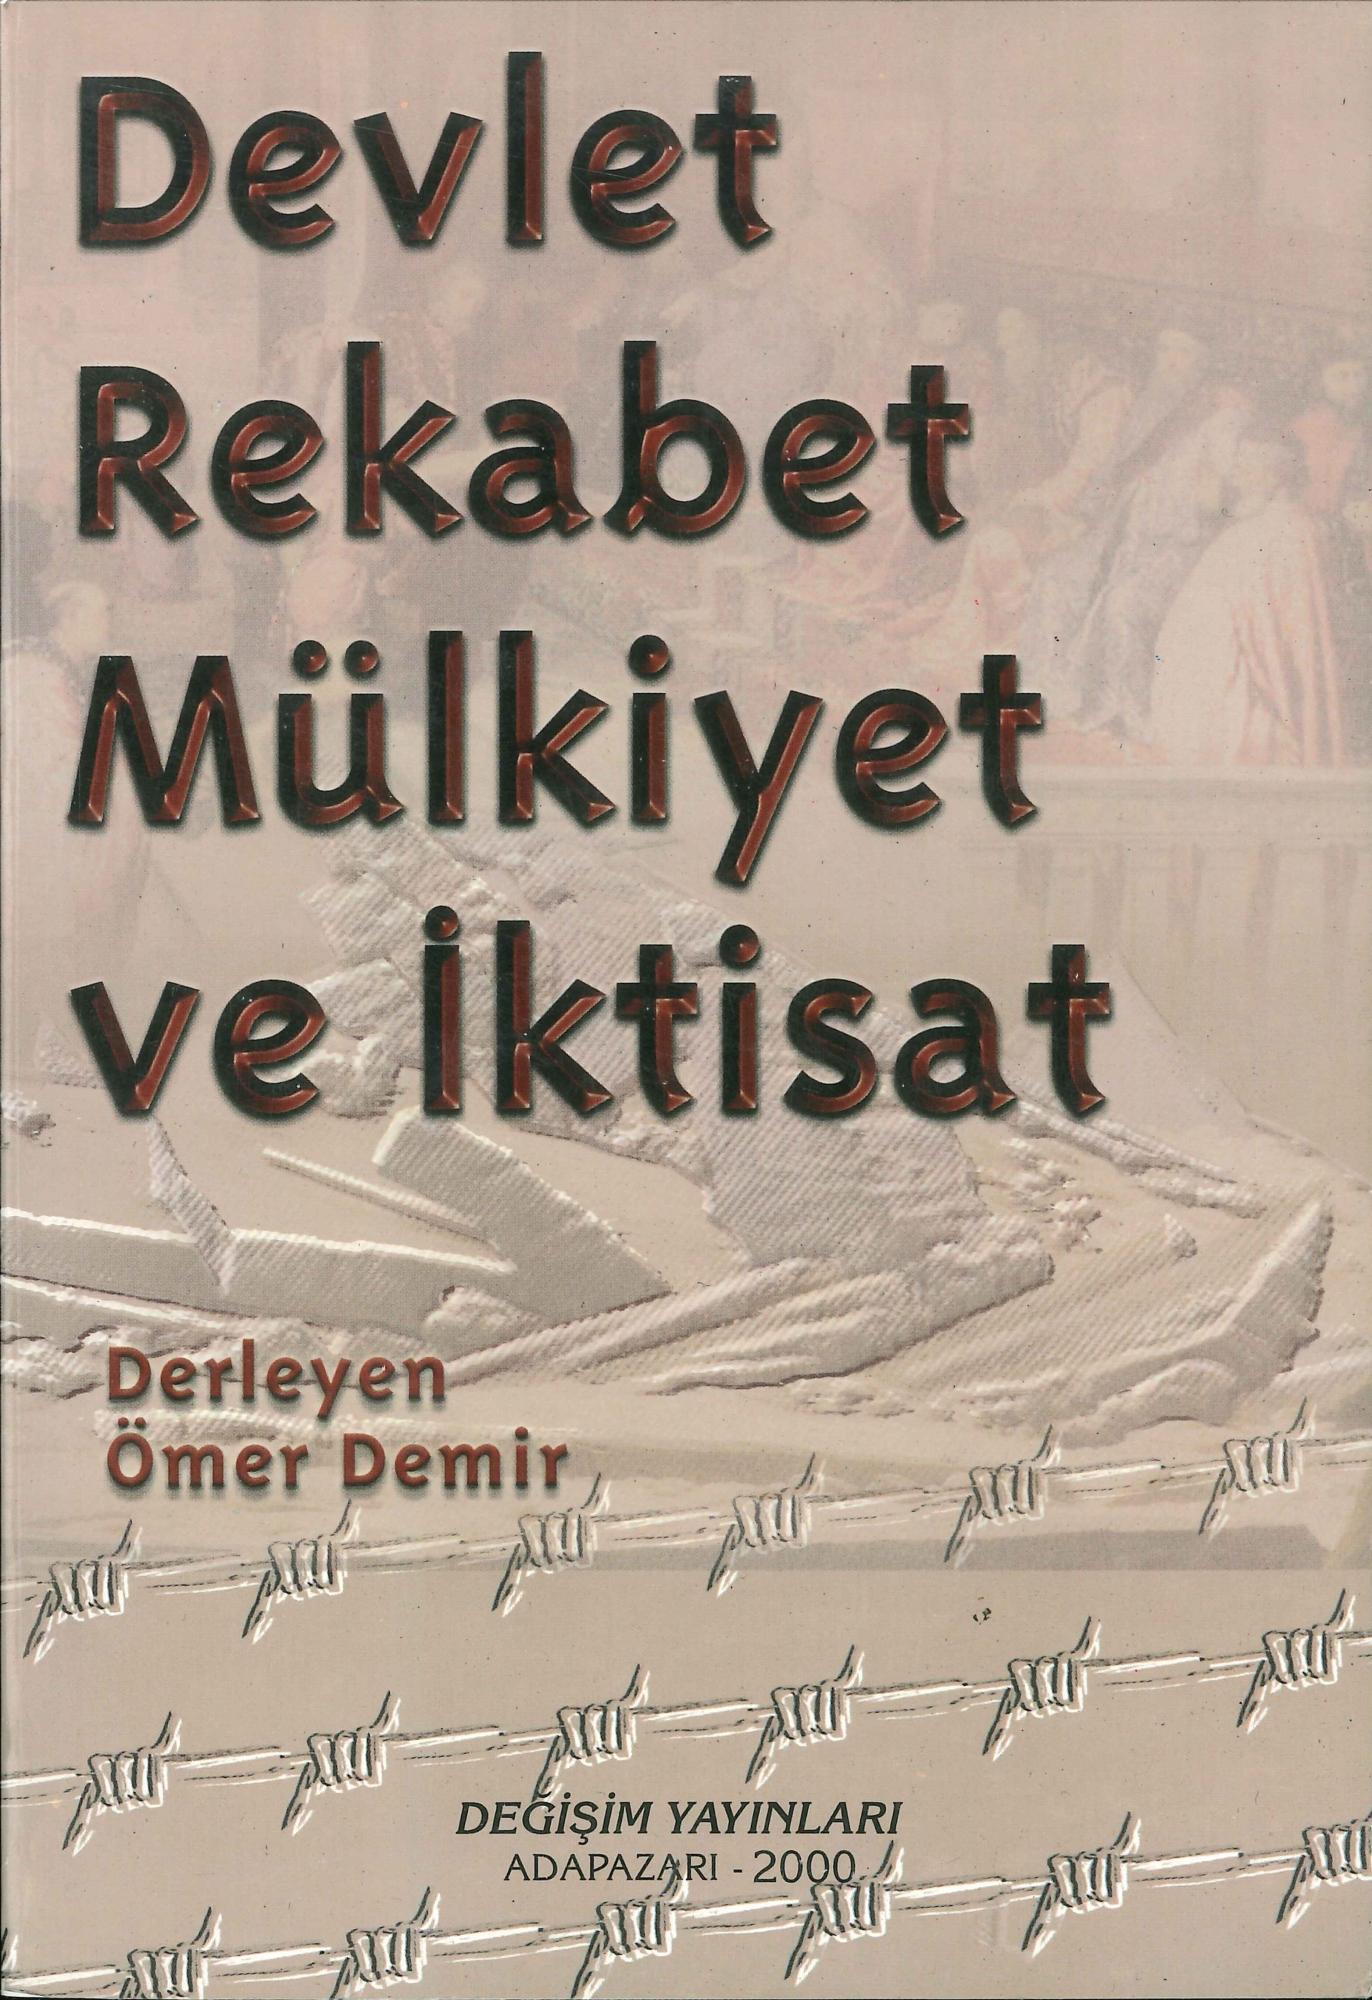 Devlet_Rekabet_Mulkiyet_ve_Iktisat